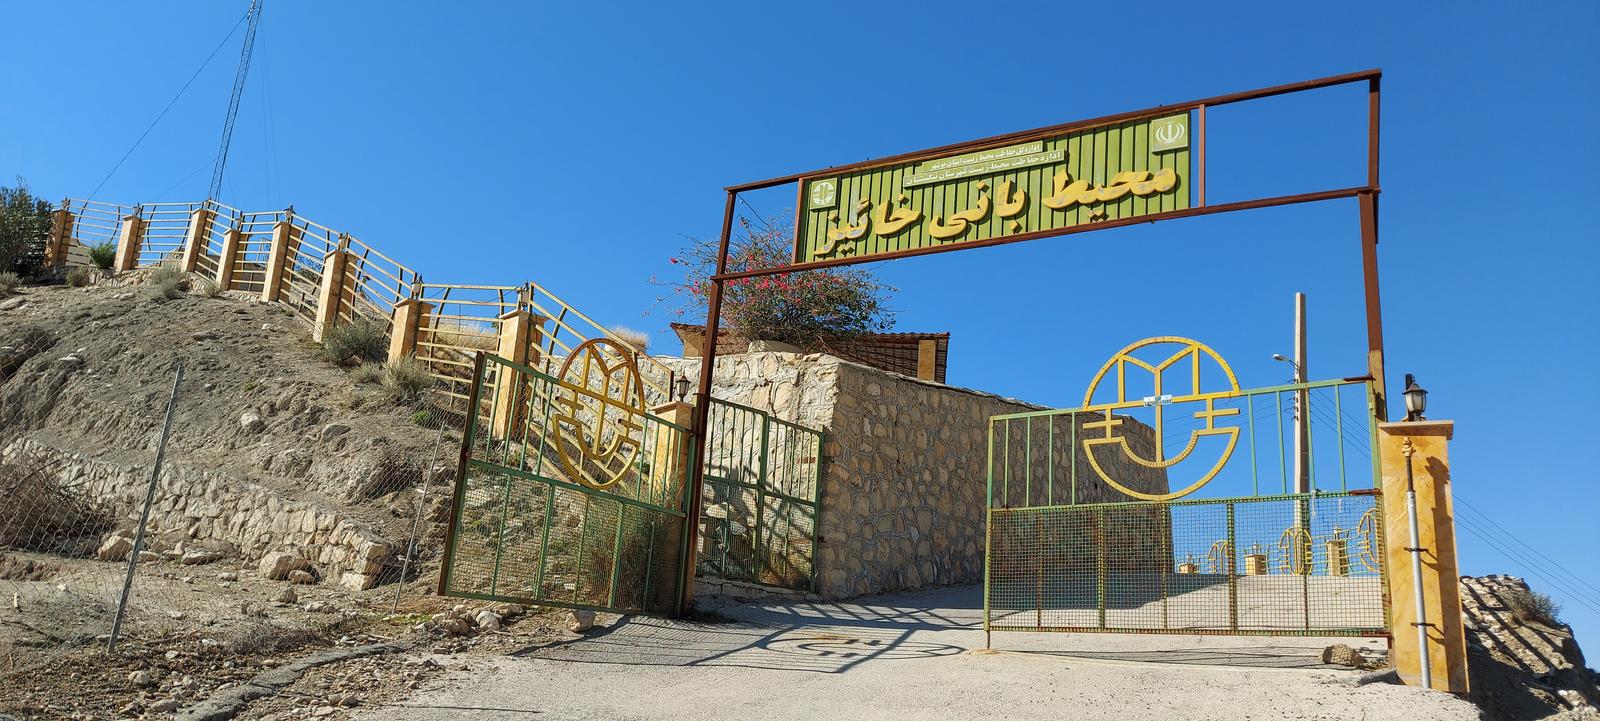 ایستگاه محیط بانی خائیز, Environmental Station of Khaiz